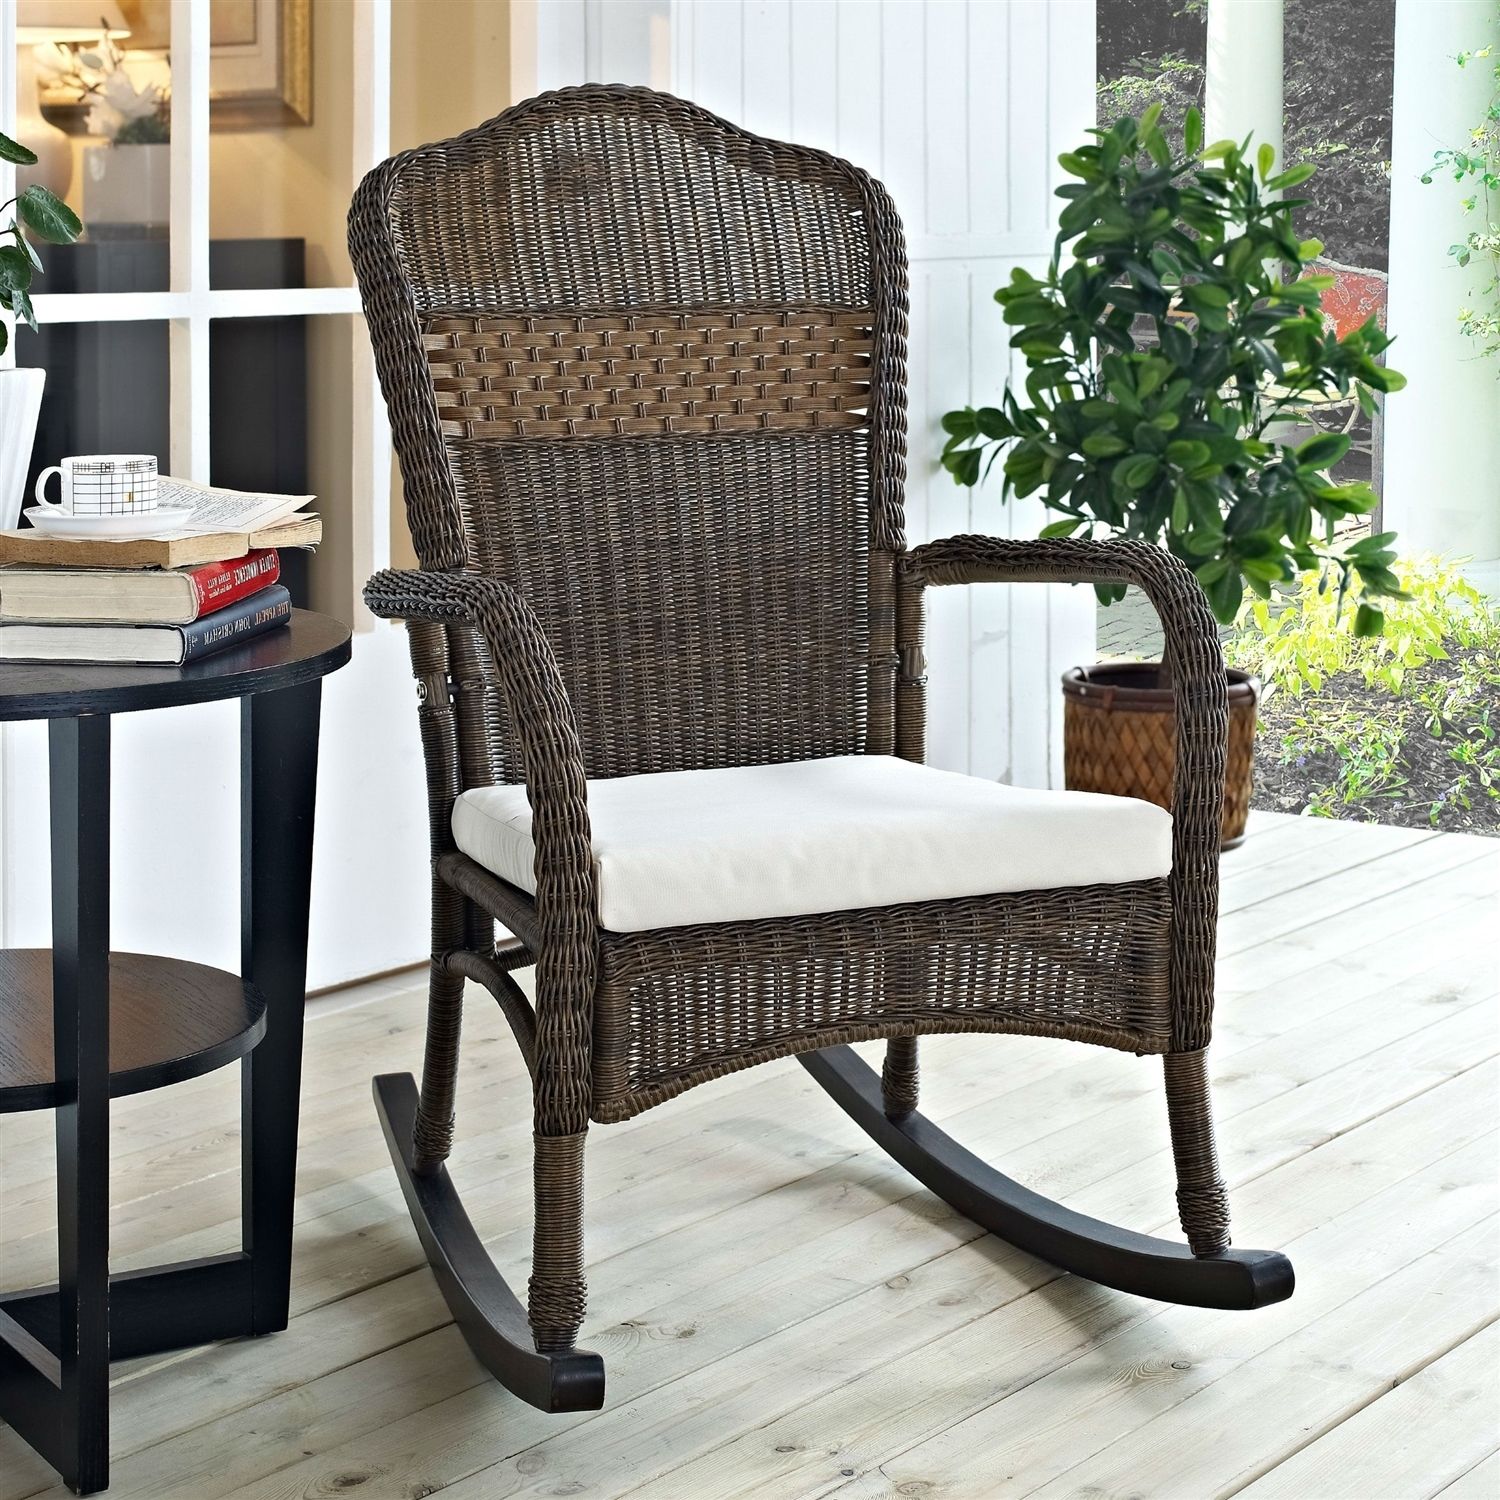 Indoor/outdoor Patio Porch Mocha Wicker Rocking Chair With Beige With Indoor Wicker Rocking Chairs (View 2 of 15)